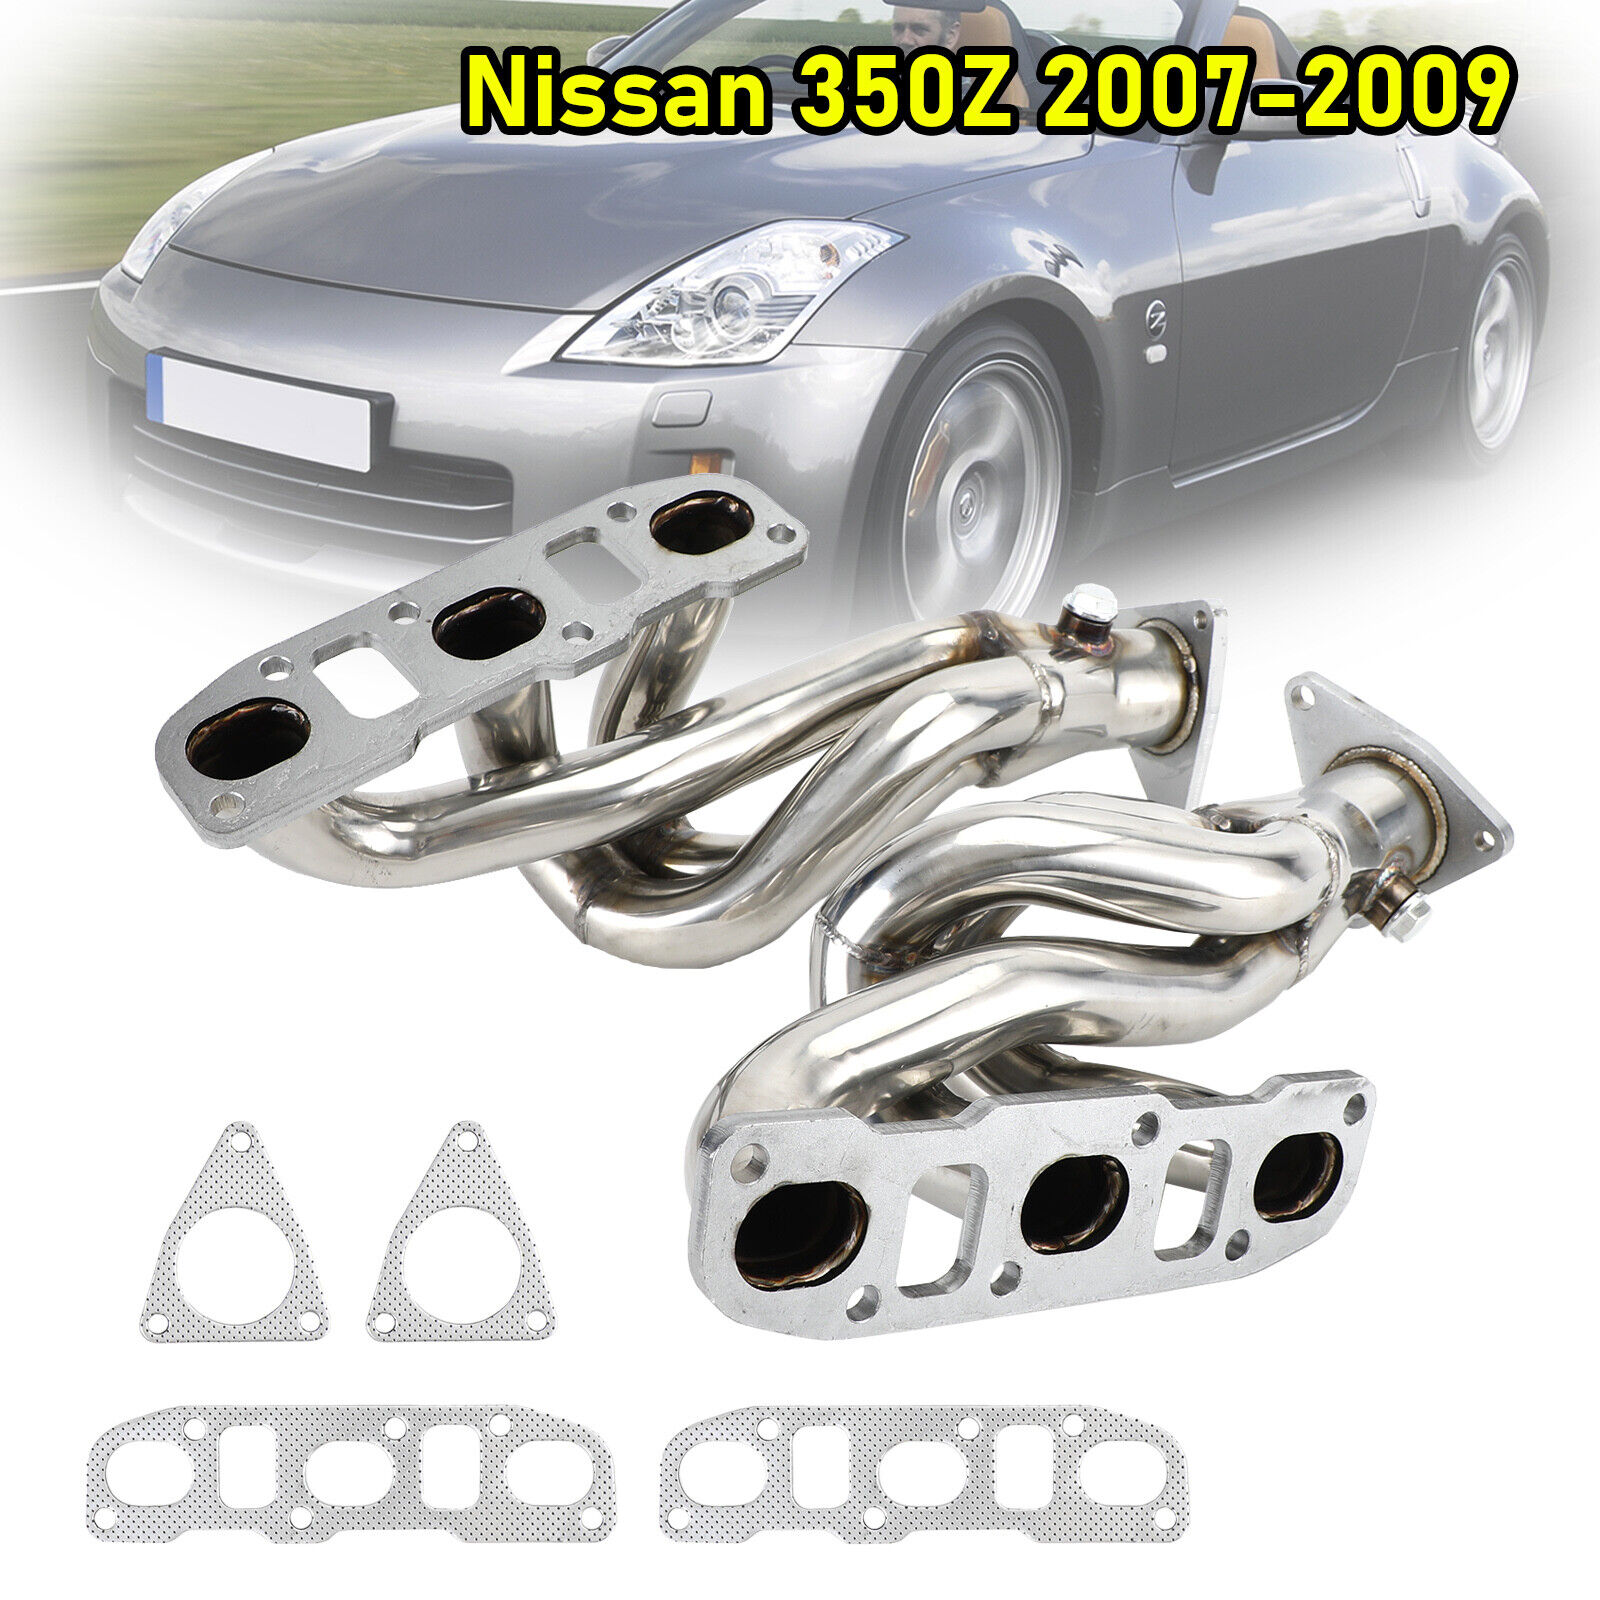 1× Stainless Exhaust Header Kit For Nissan 350Z / 370Z & 08-13 Infiniti G37 3.7